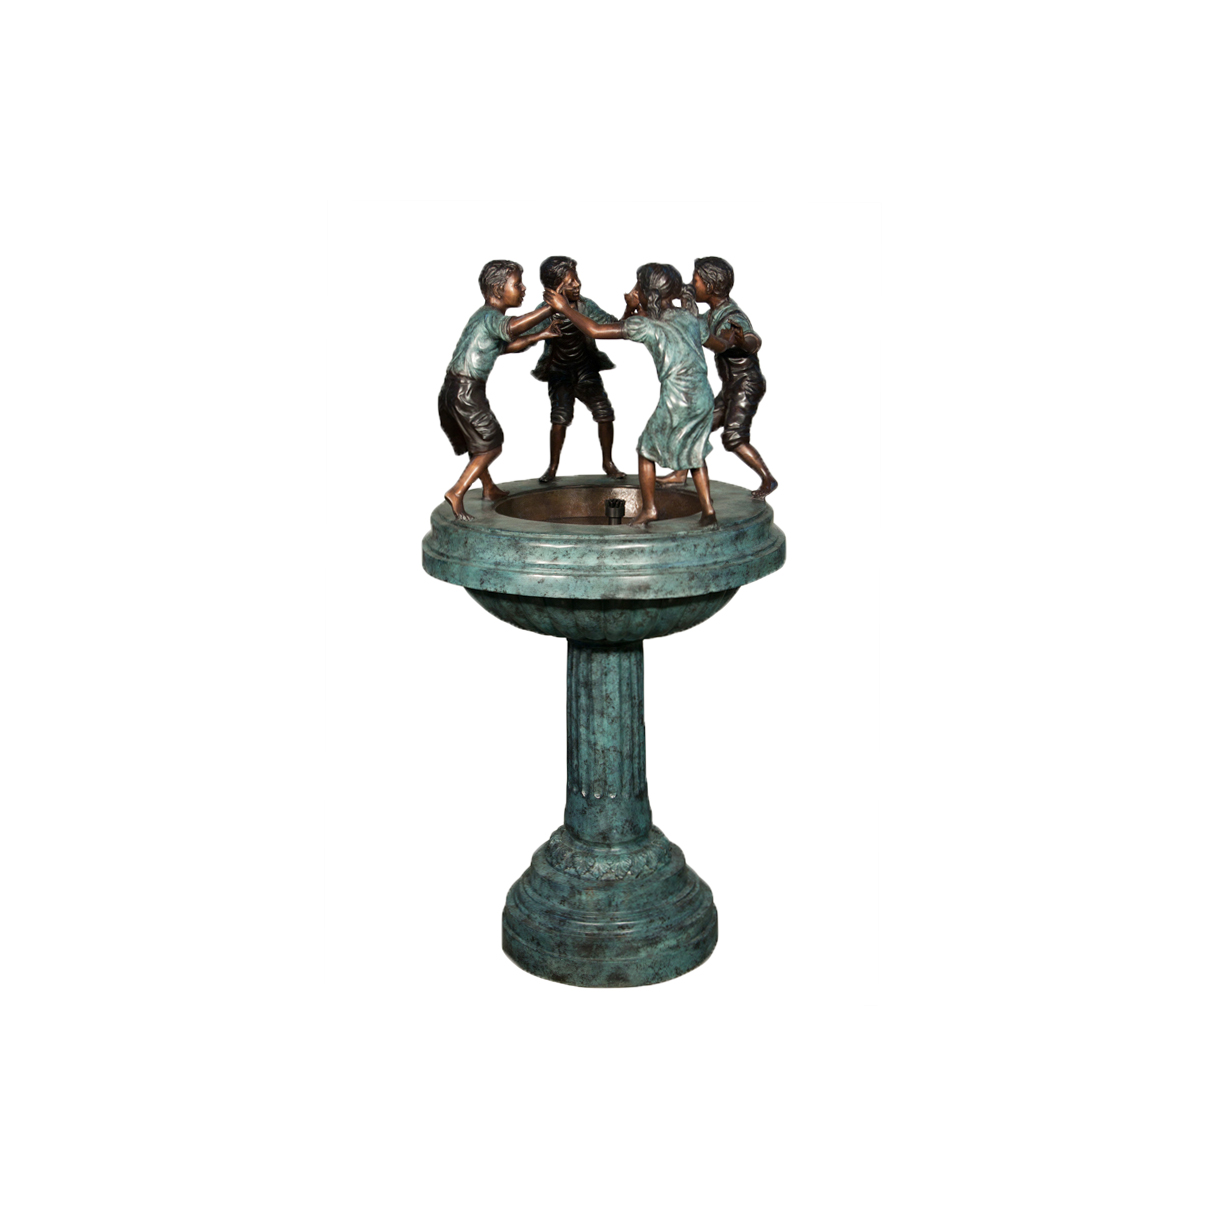 Bronze ‘Ring around the Rosie’ Fountain Sculpture